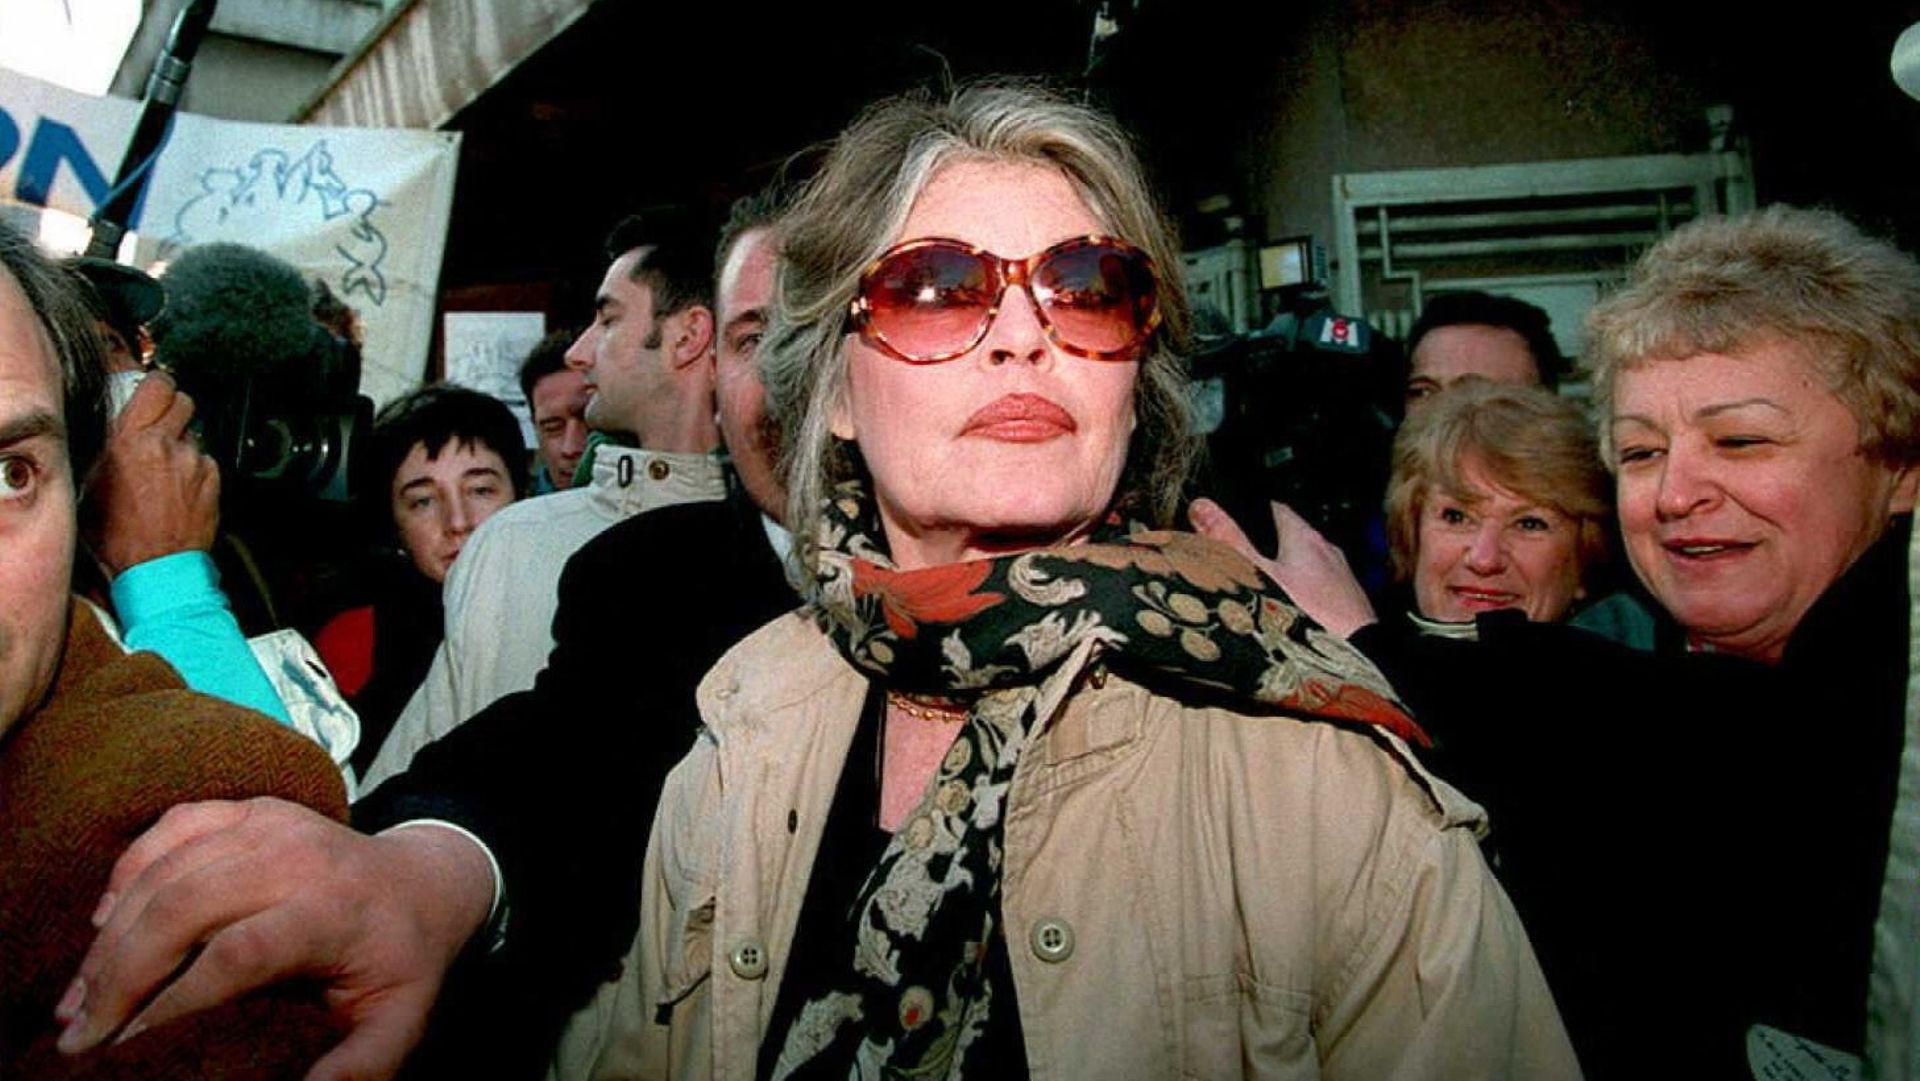 Photographie de Brigitte Bardot entourée de fans durant une représentation de la fondation Brigitte Bardot à la Foire Agricole.